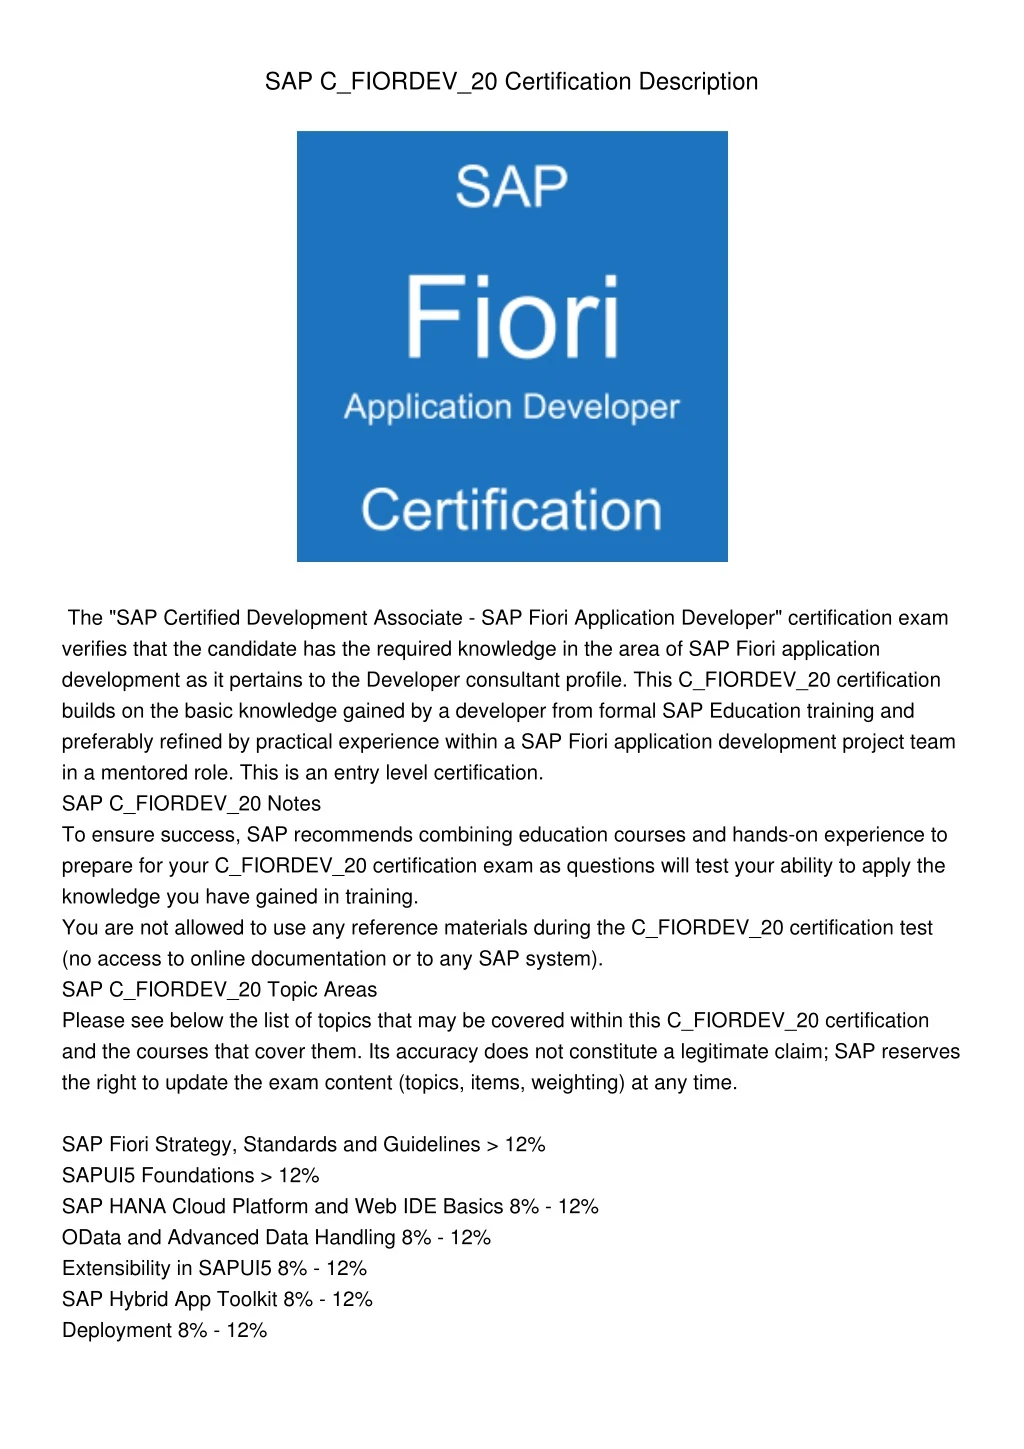 sap c fiordev 20 certification description